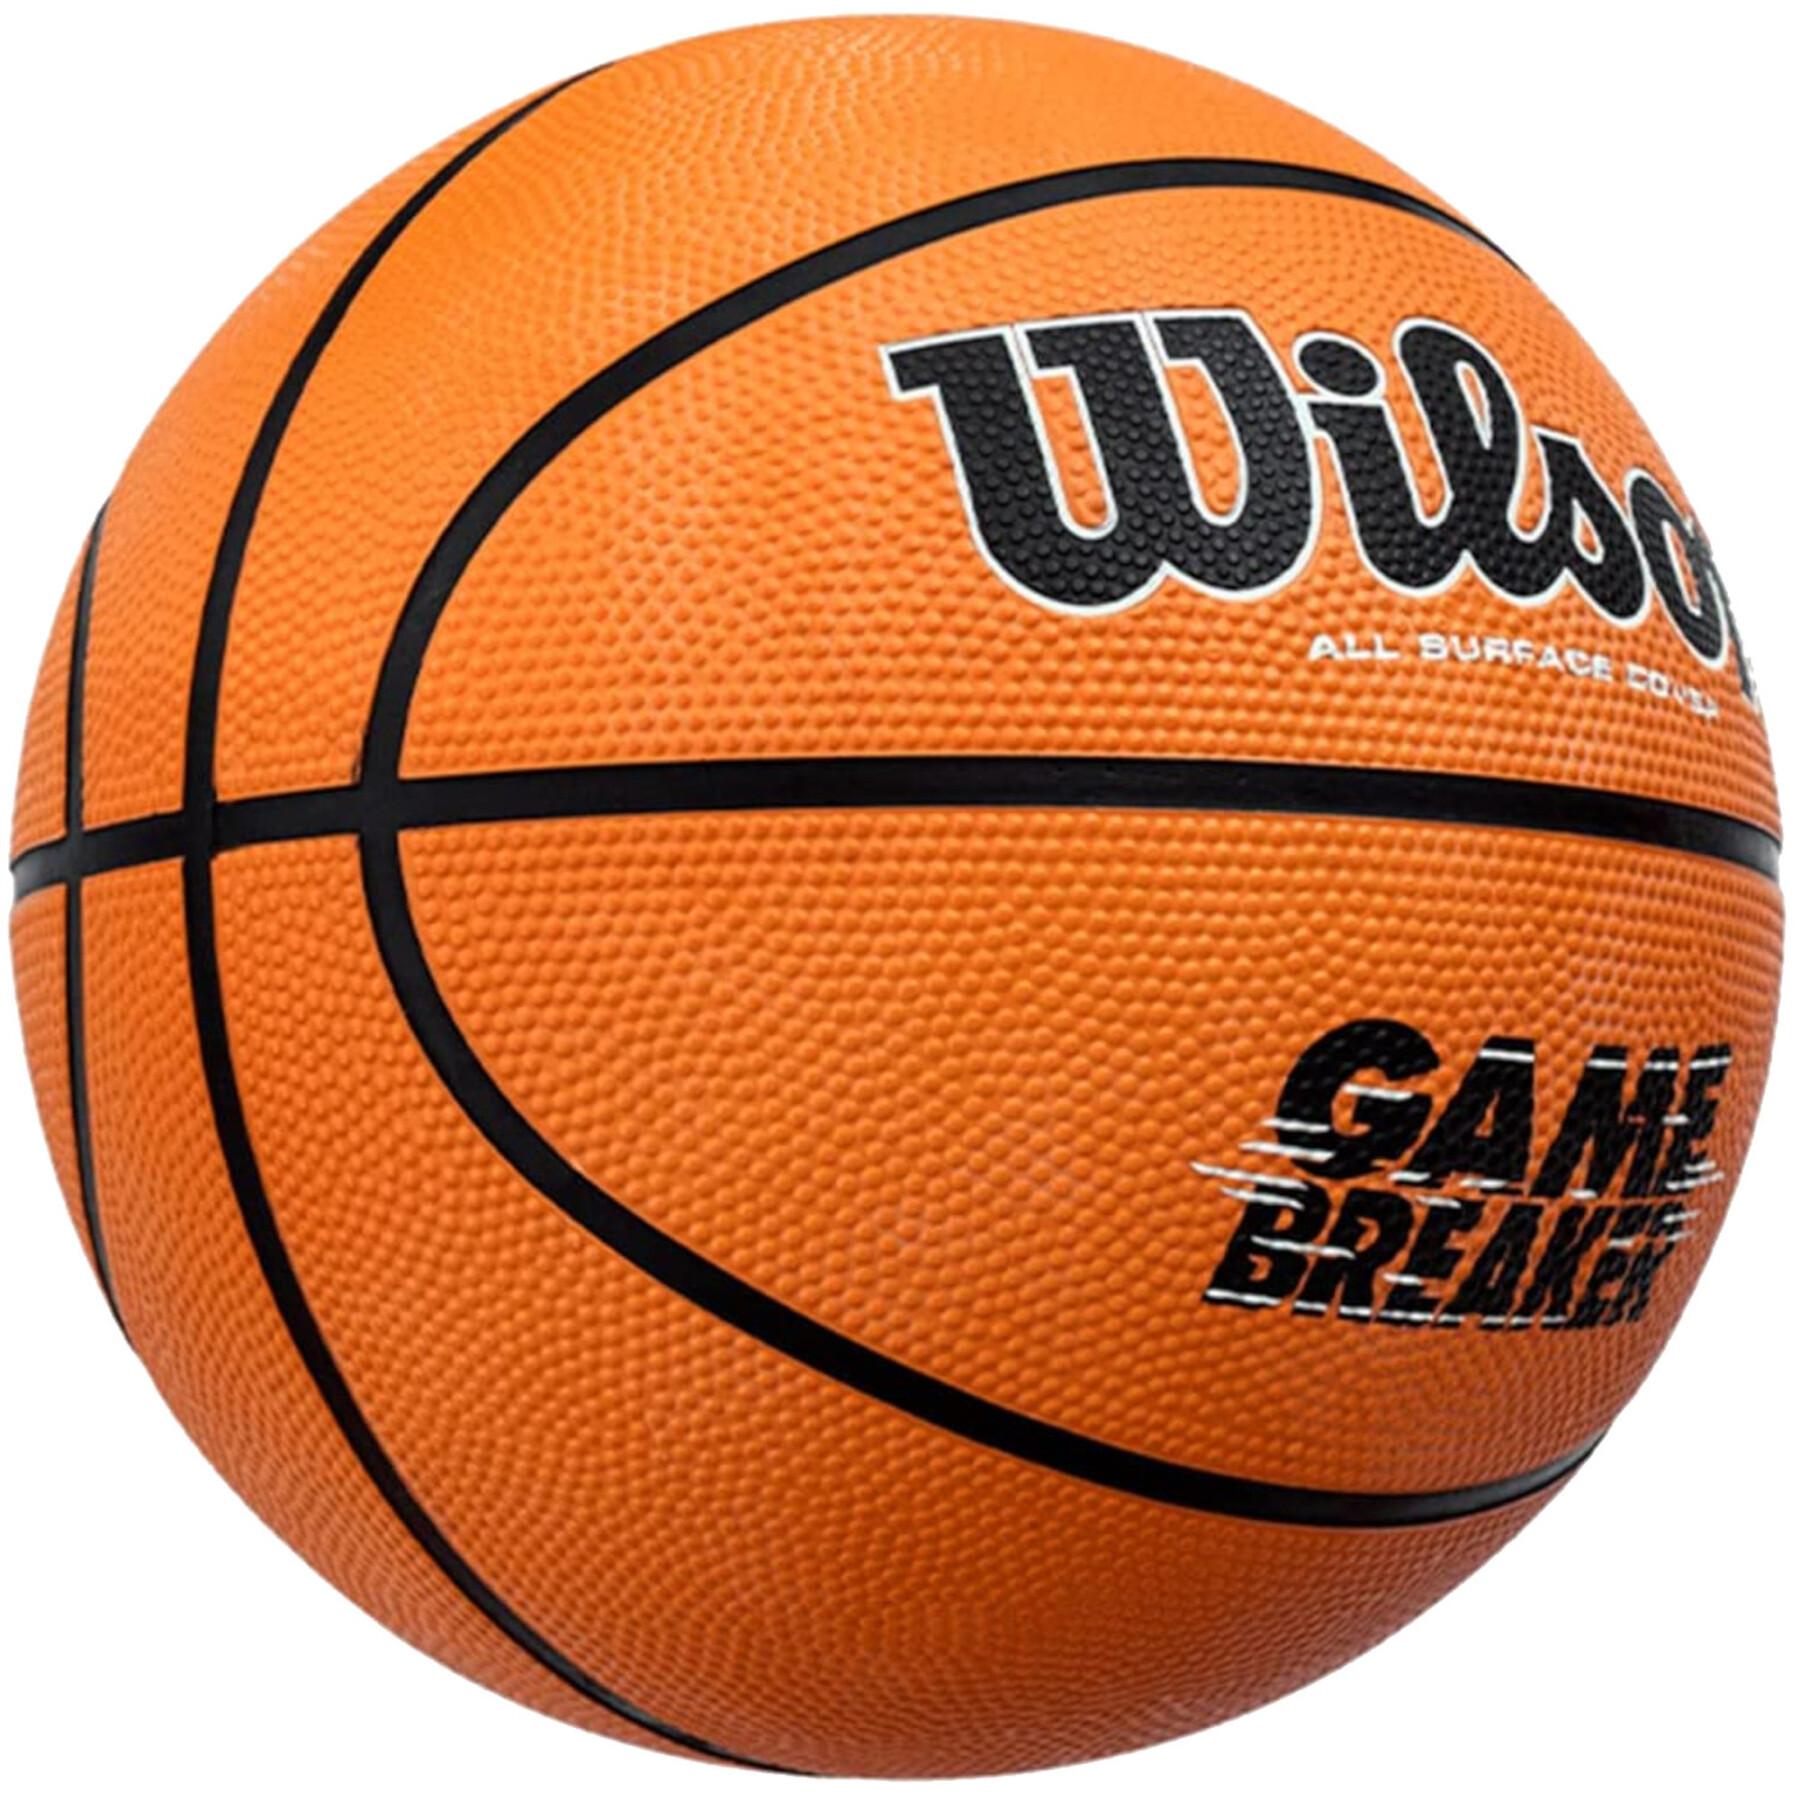 Gamebreaker ball Wilson